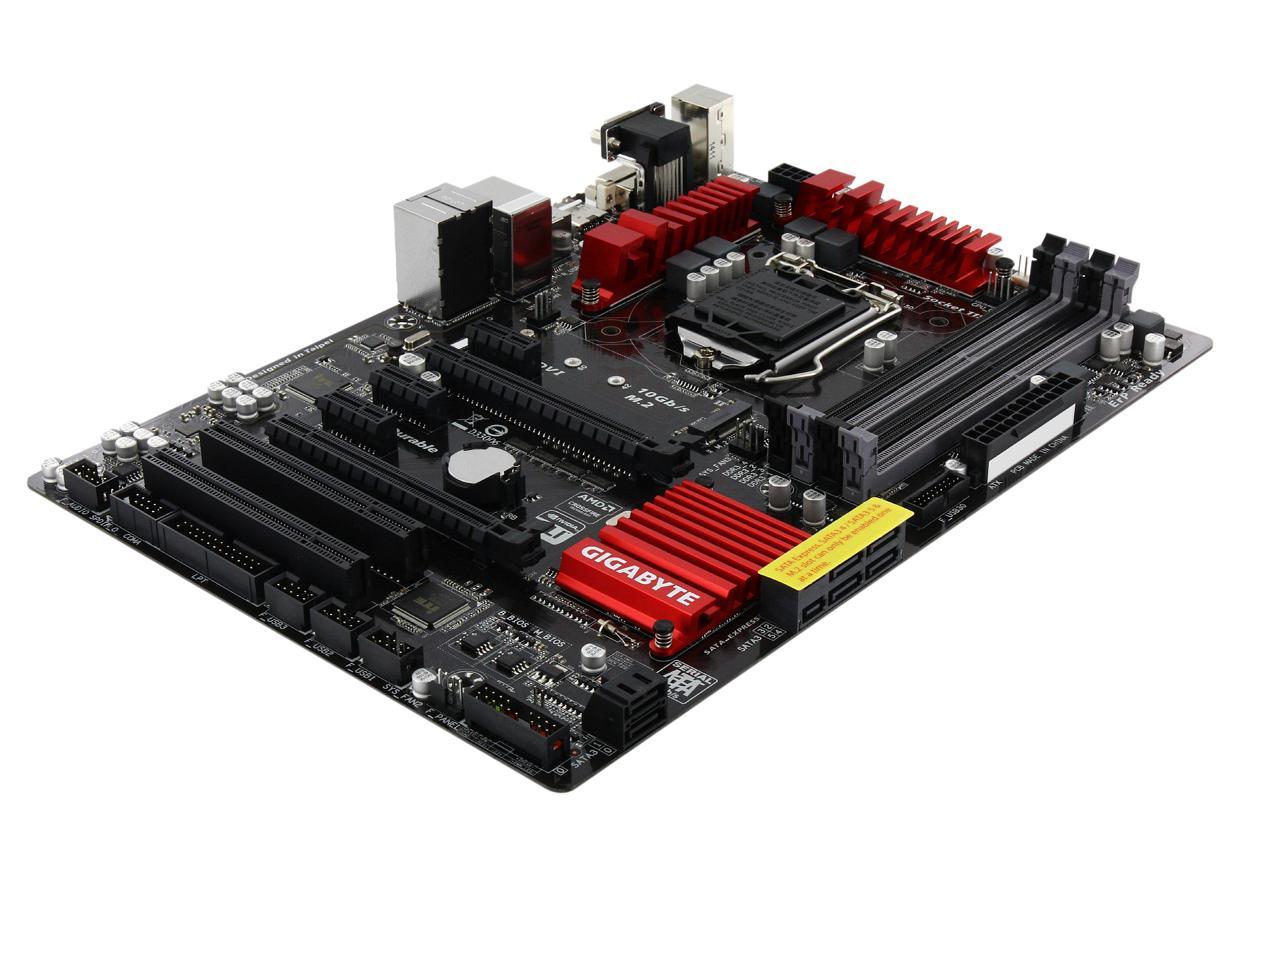 GIGABYTE GA-Z97X-SLI LGA 1150 ATX Intel Motherboard - Newegg.com